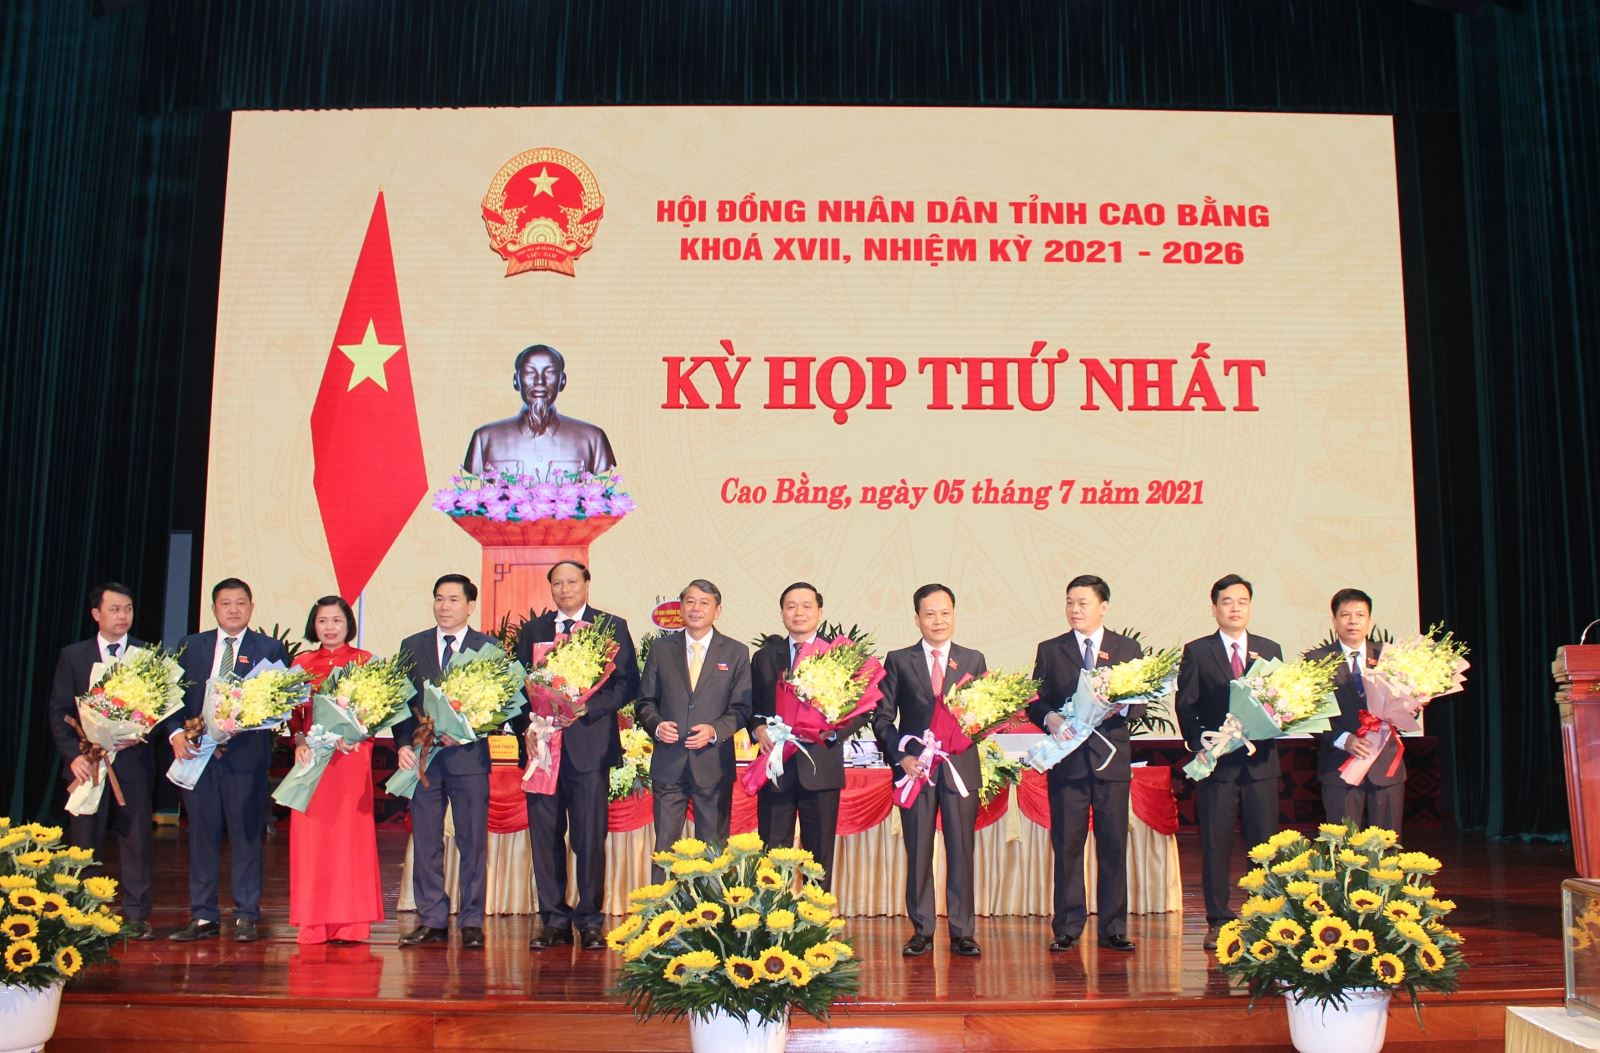 Phó bí thư Tỉnh ủy, Chủ tịch UBND tỉnh Hoàng Xuân Ánh tặng hoa chúc mừng lãnh đạo HĐND tỉnh Khóa XVII